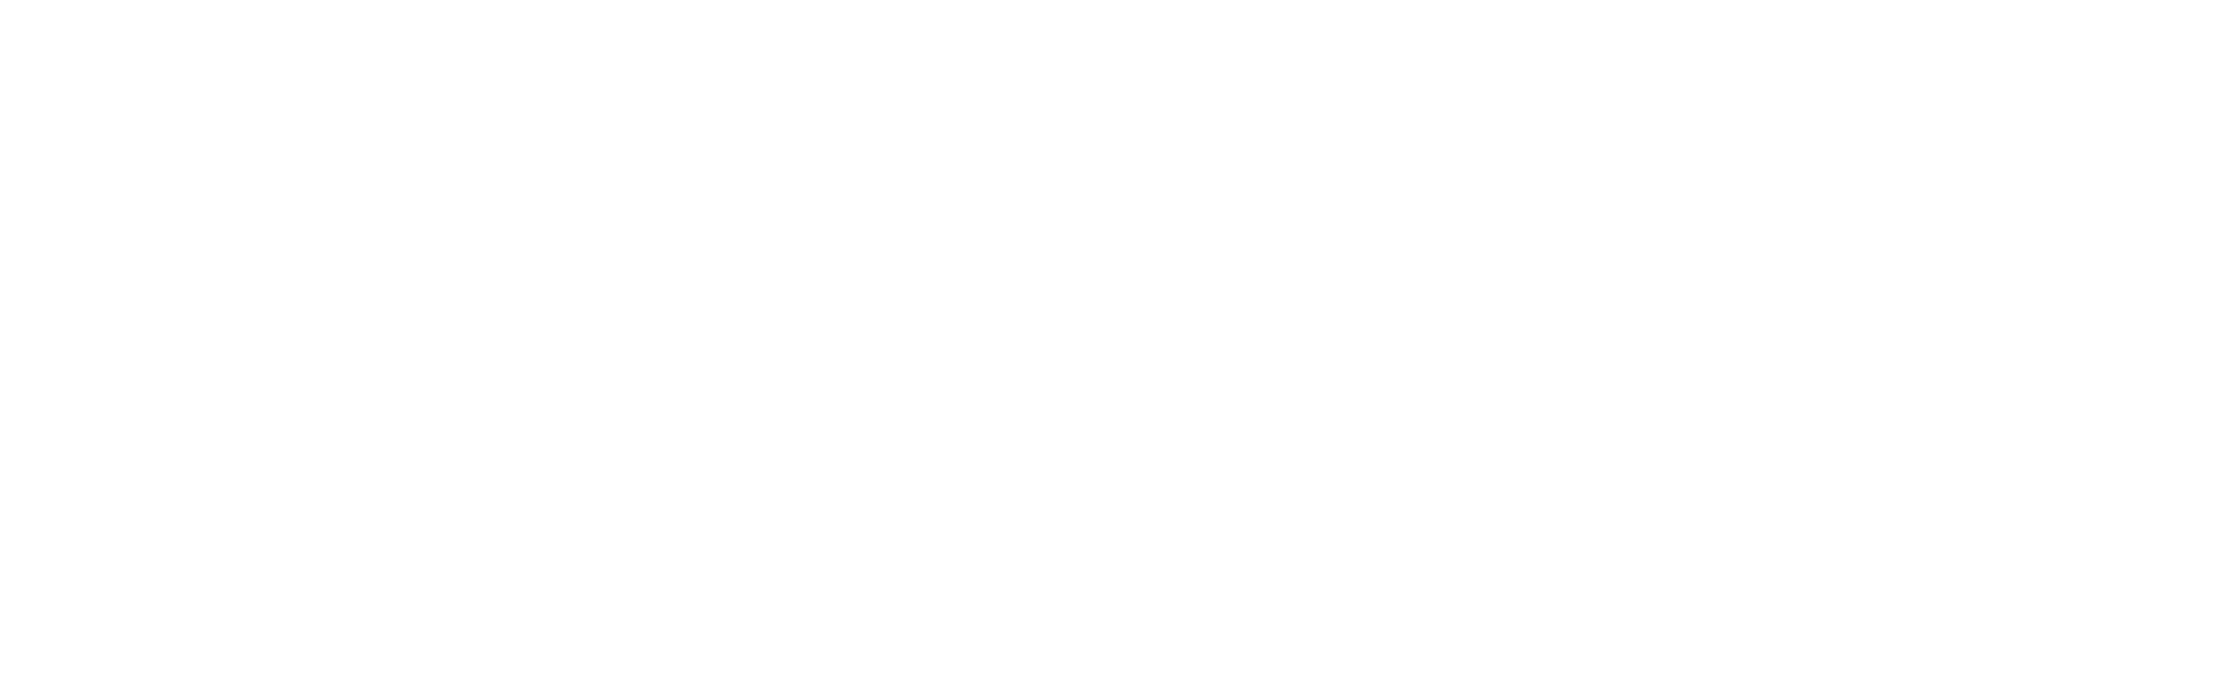 UParis Cité logo